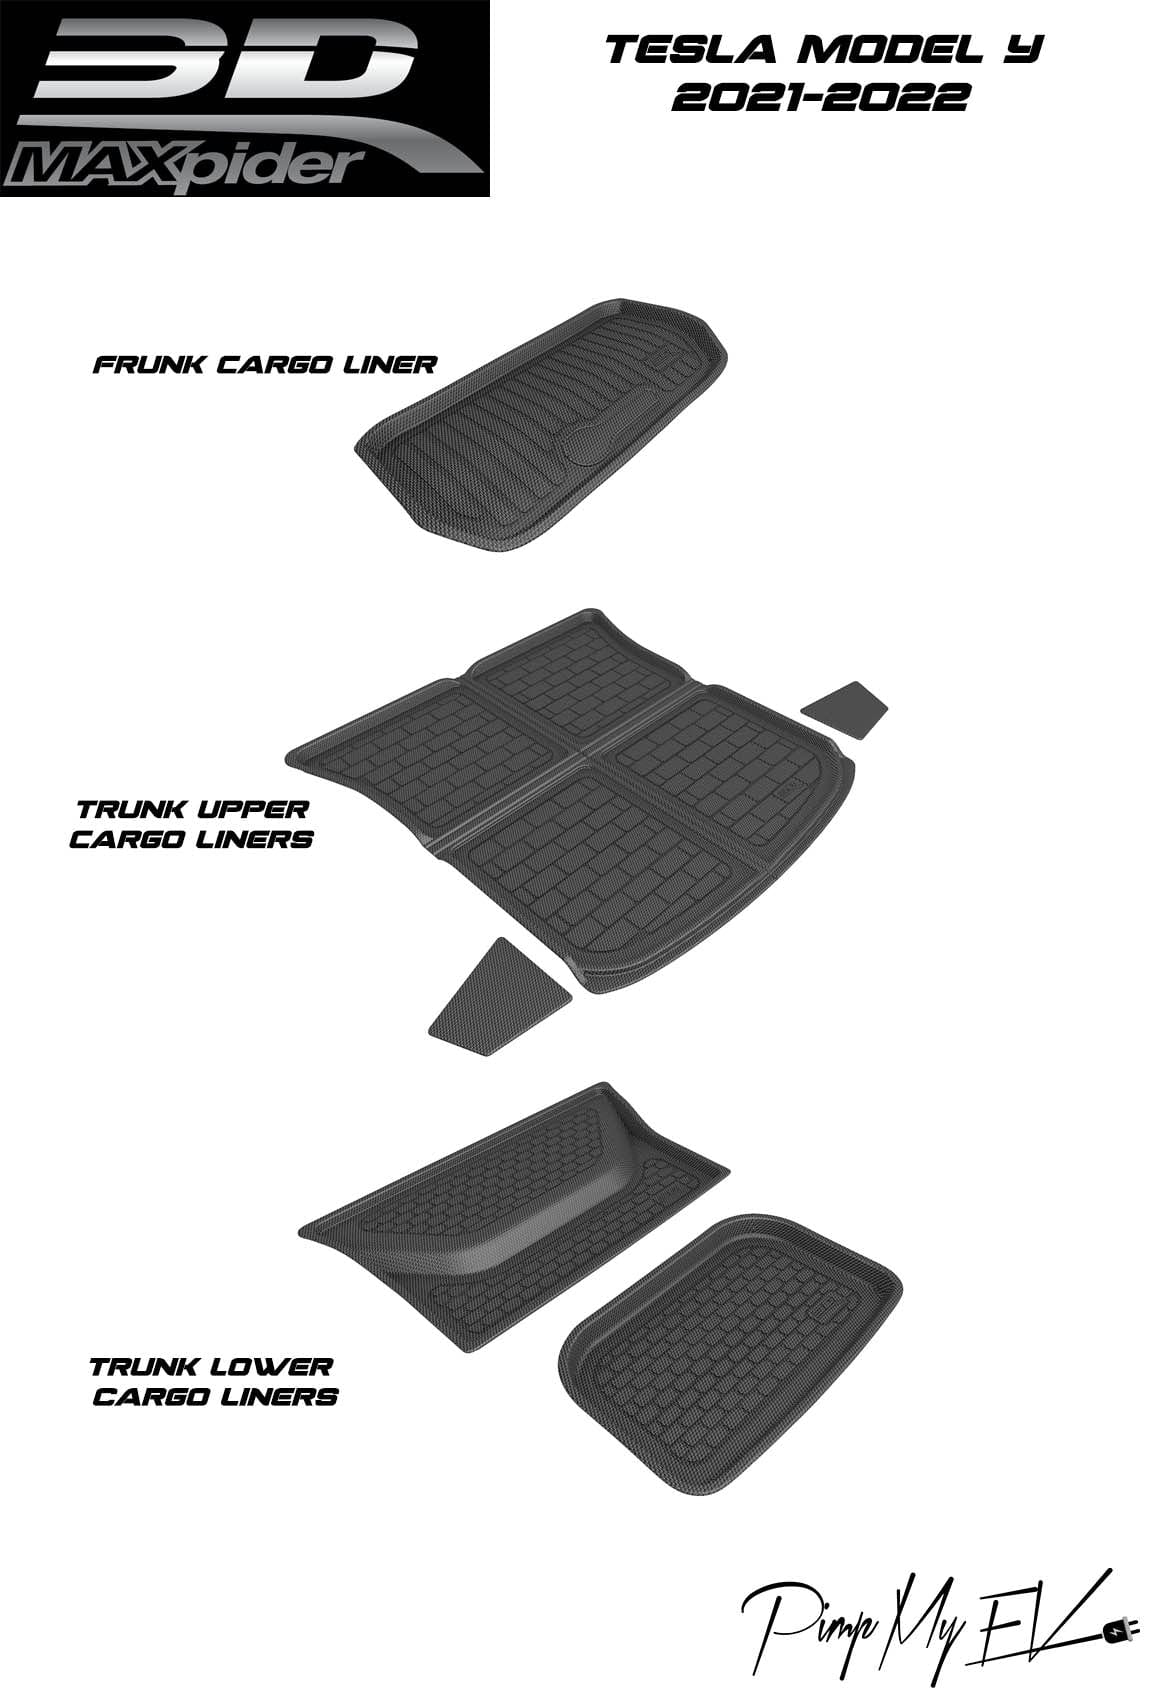 Tesla Model S Custom-Fit Floor Mats and Liners (3D MAXpider